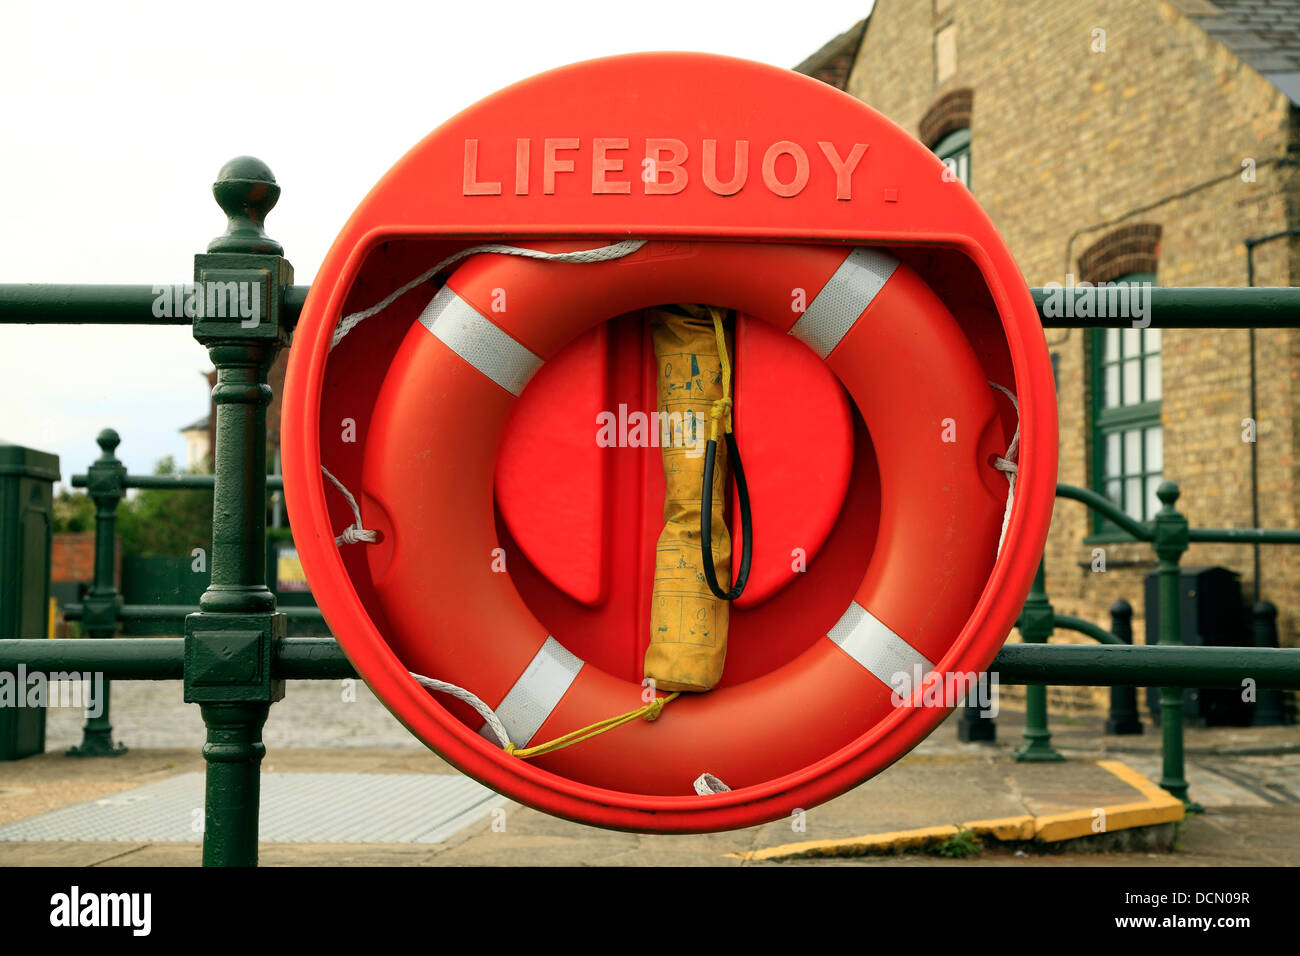 Salvagente, Riverside vita attrezzature di salvataggio, England Regno Unito, boa, boe salvagenti anulari Foto Stock